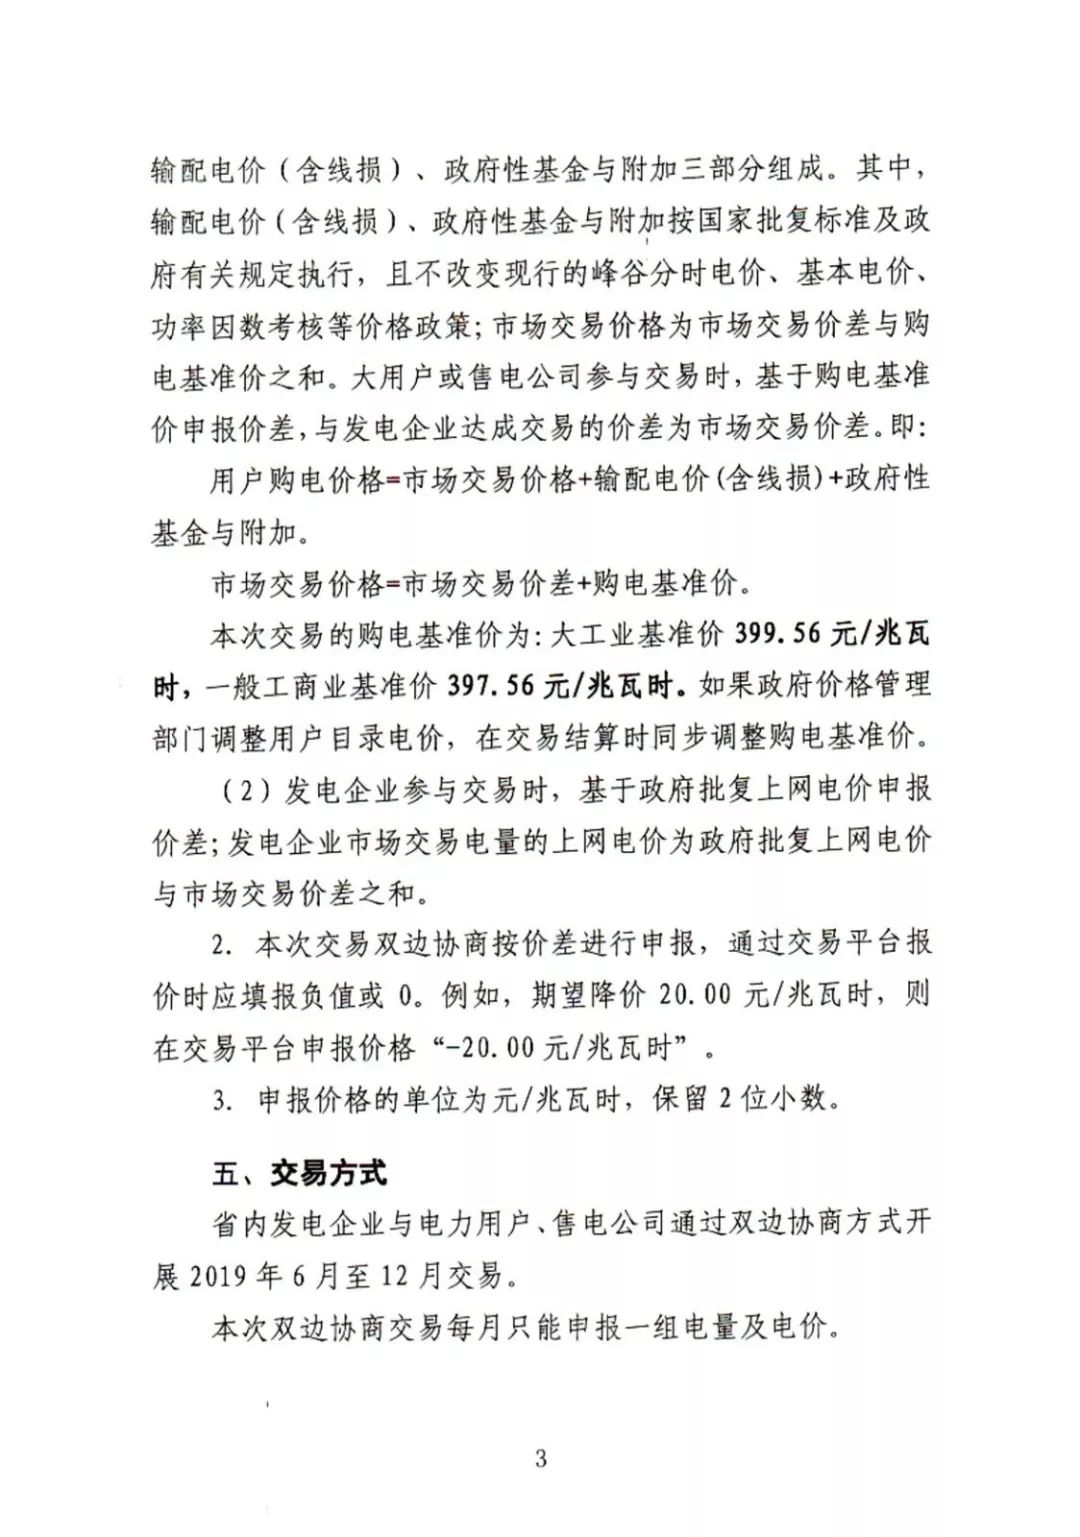 湖南电力交易中心2019年6-12月电力市场交易公告：各月成交电量不设具体限额